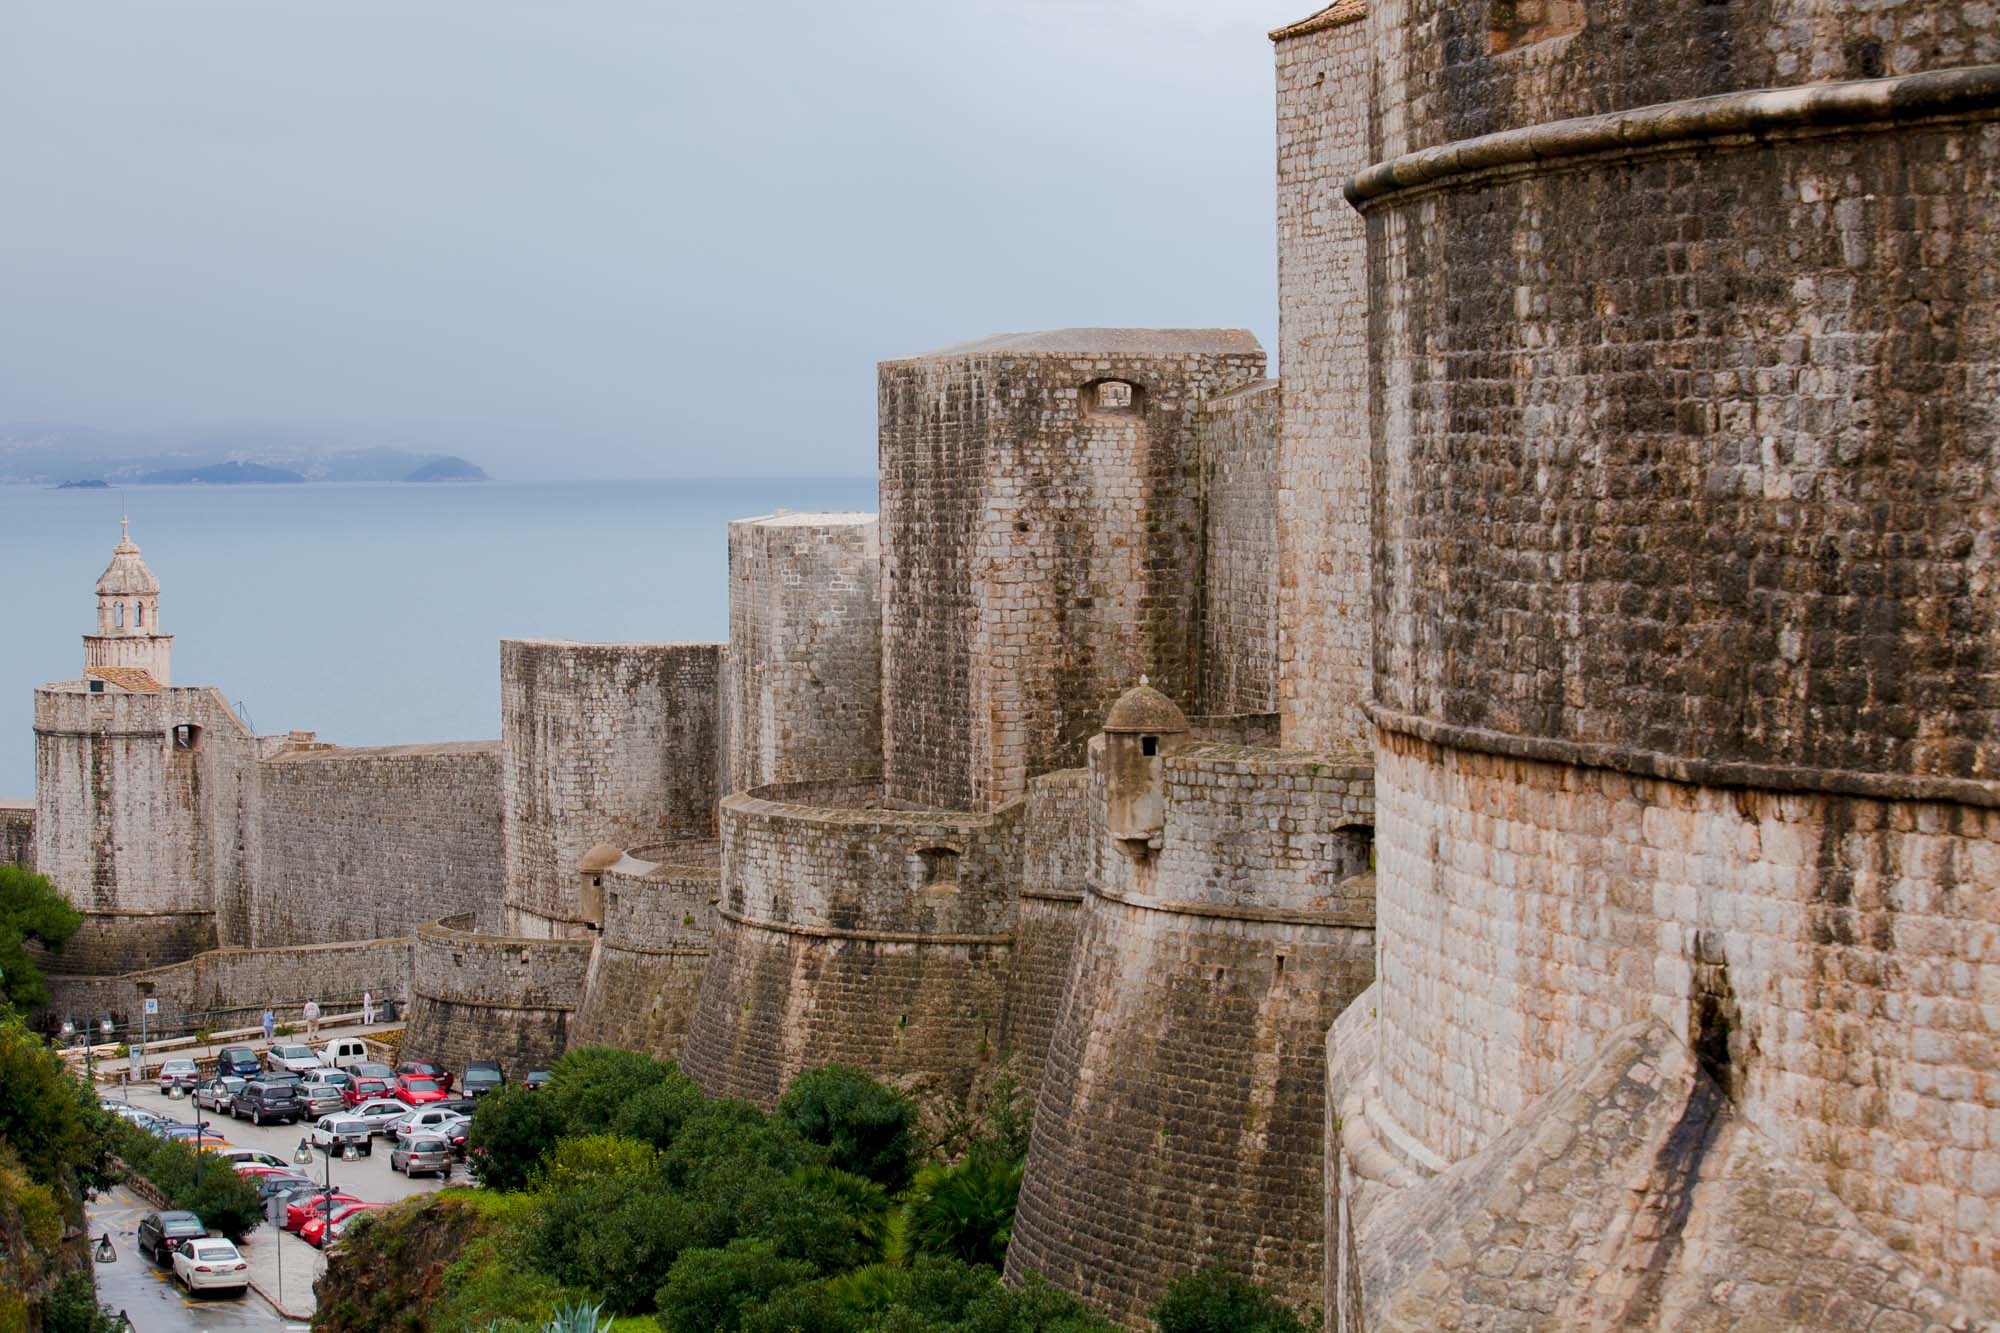 Old Dubrovnik battlements